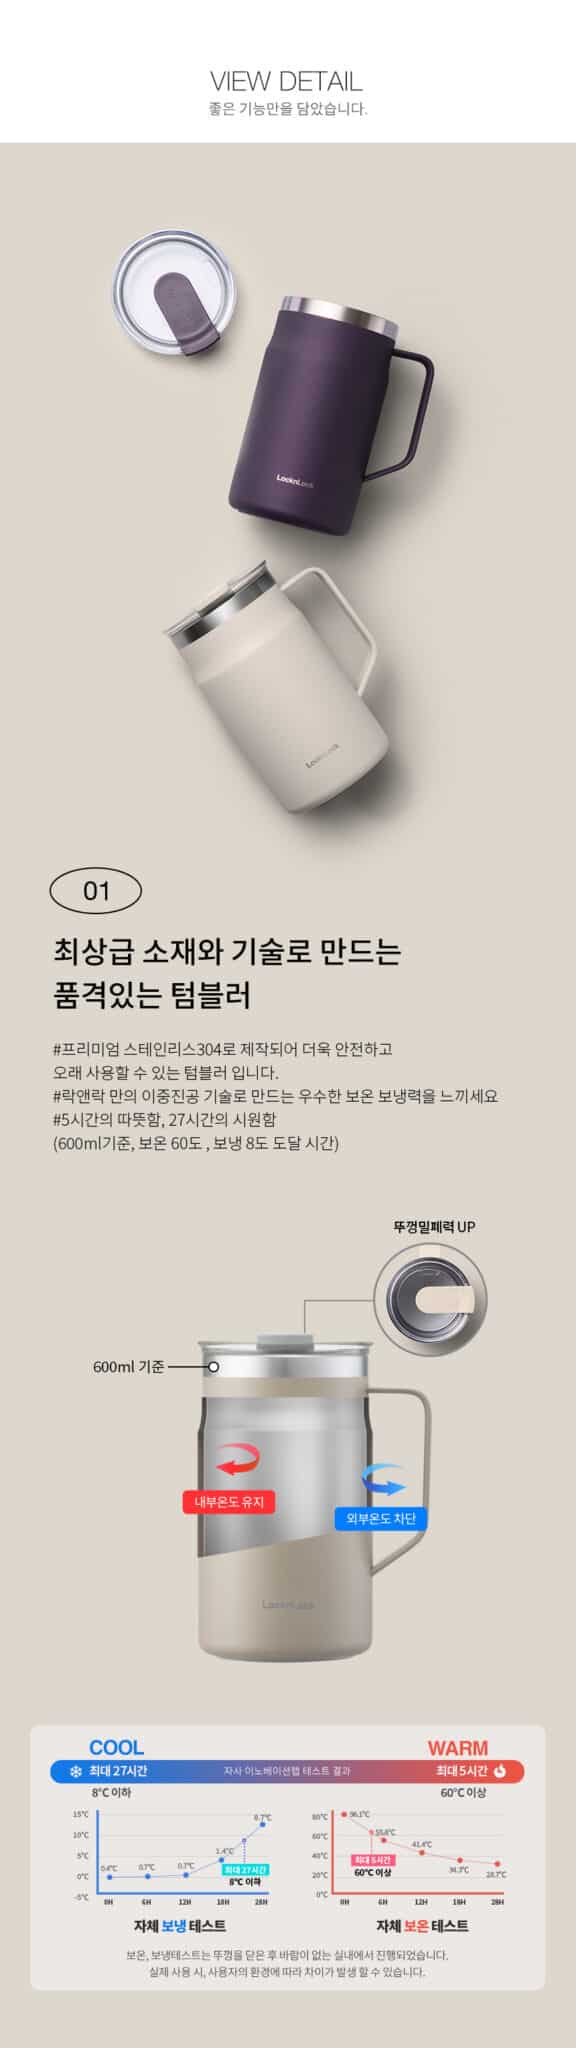 LOCK&LOCK] METRO MUG 600ml 5color BTS Jungkook's Mug Tumbler - Now